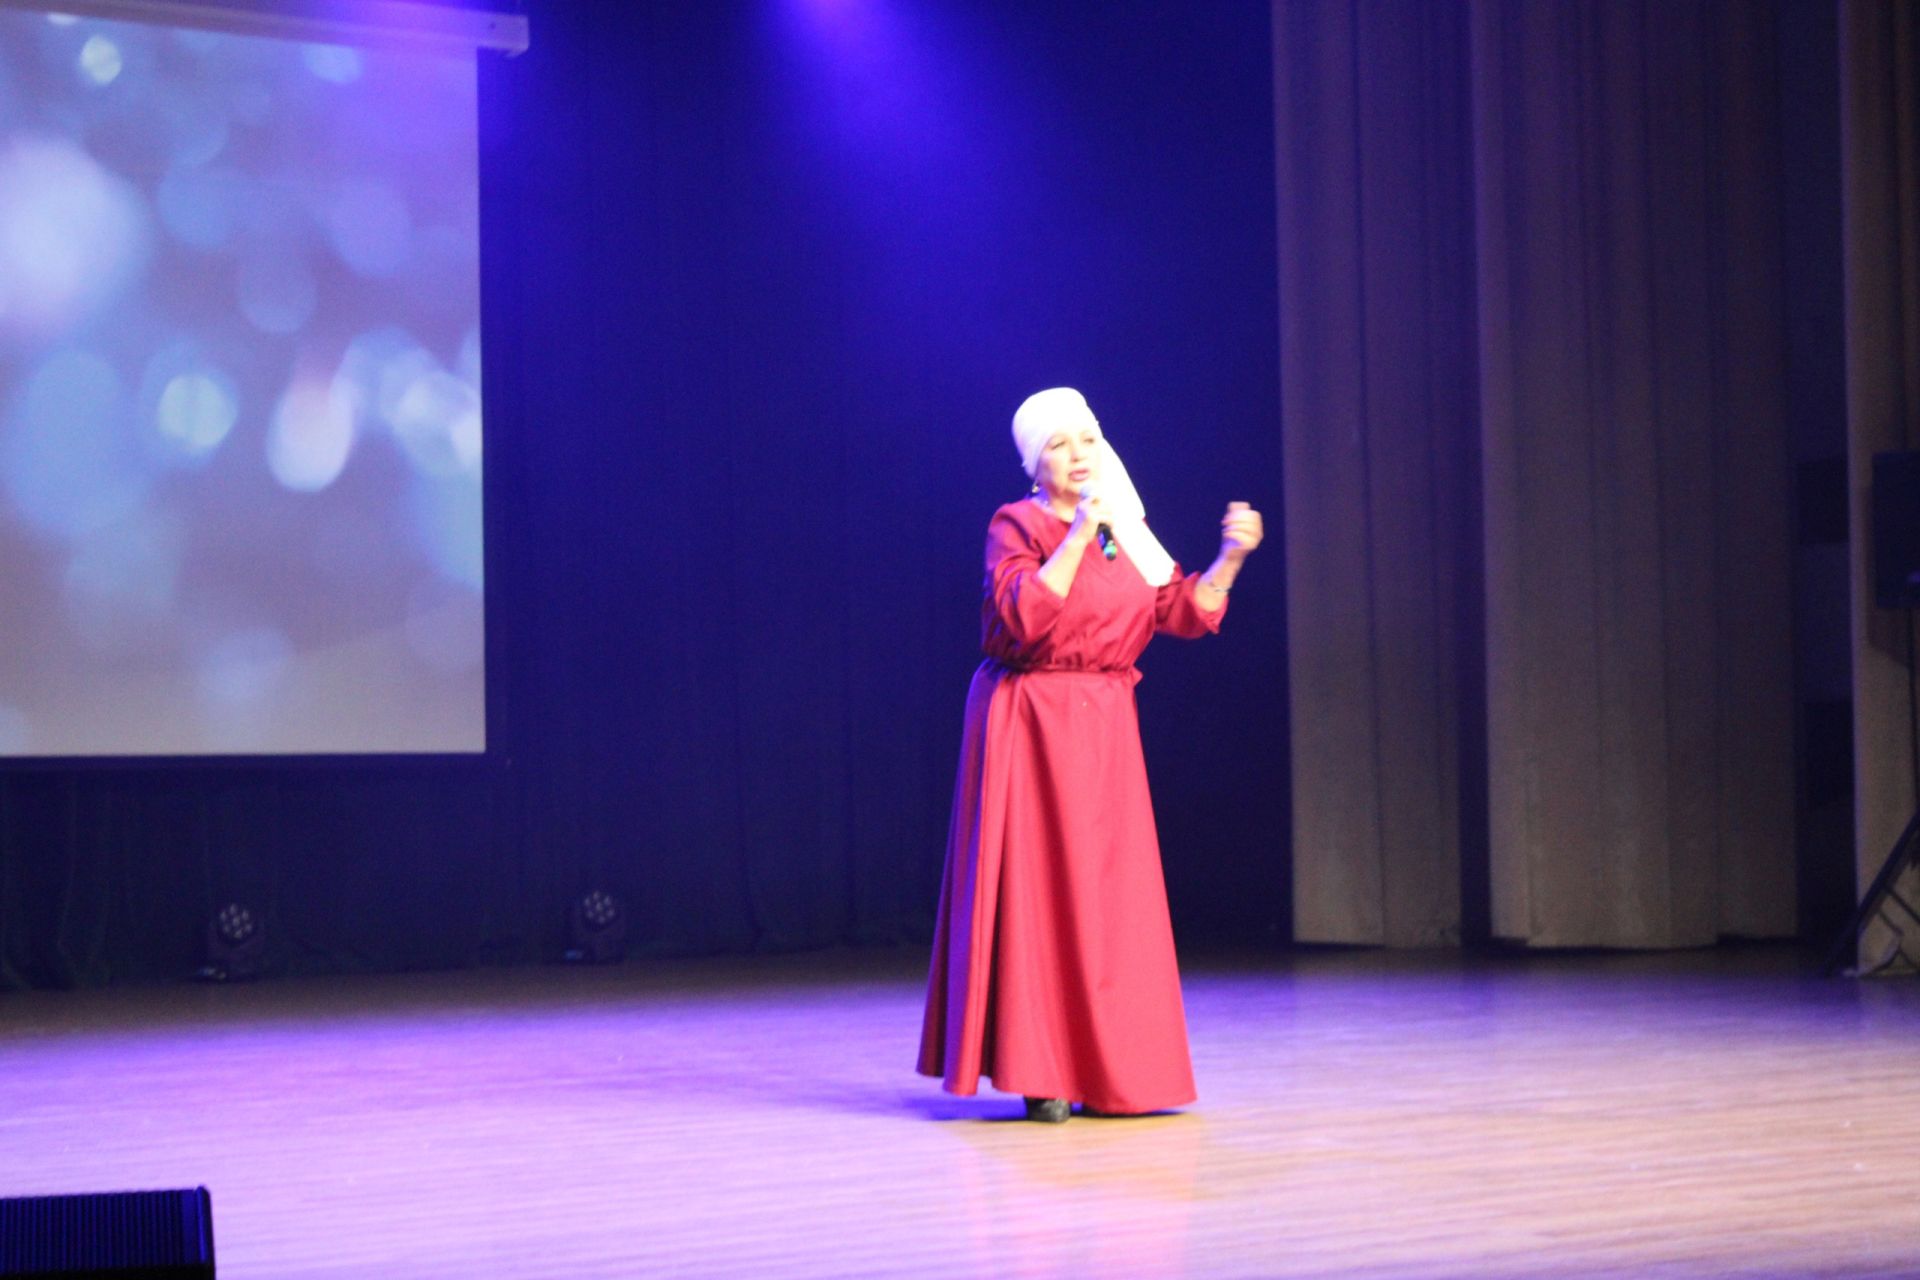 Концерт клуба татарской культуры «Адымнар» собрал восторженные отзывы зрителей